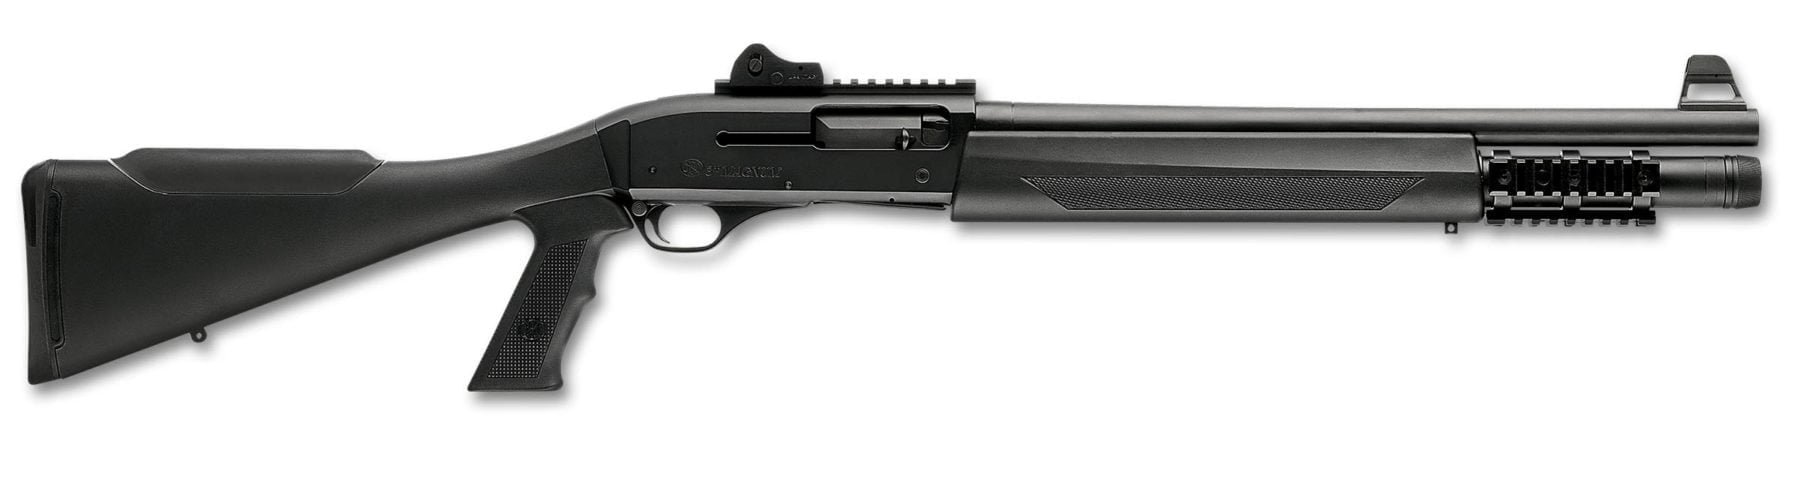 FN SLP SHotgun for sale, a great tactical shotgun - USA Gun Shop.